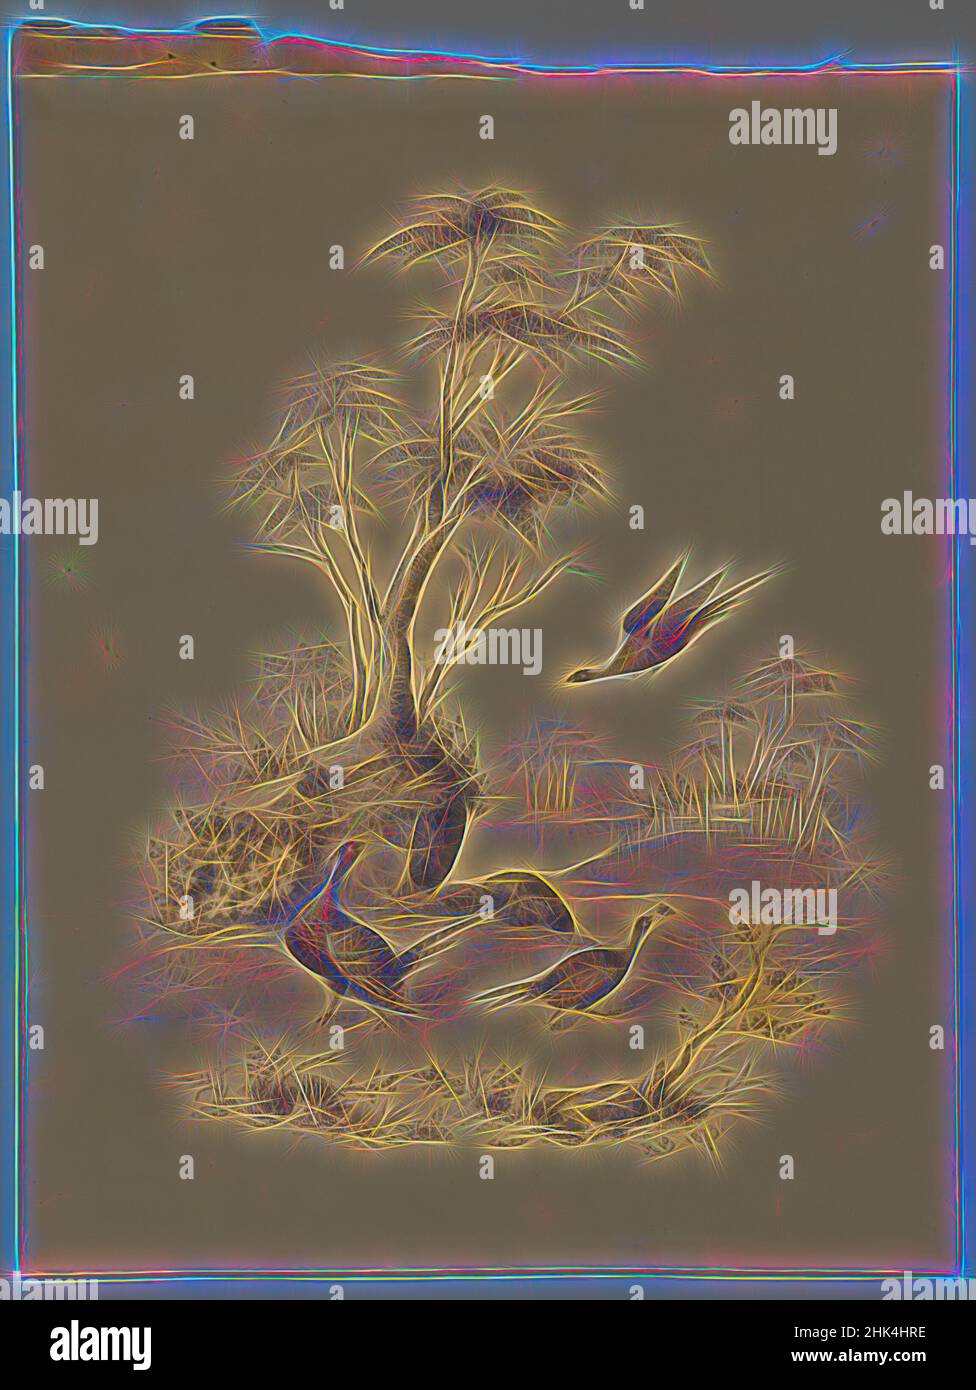 Inspiriert von drei Faasanten, James Ryder van Brunt, American, 1820-1916, Graphit und Aquarell auf Papier, 1873, Blatt: 10 x 7 9/16 Zoll, 25,4 x 19,2 cm, Amerikaner, Vögel, Brunt, Graphit, James, Natur, faasants, Ryder, Three, Baum, van, vanBrunt, Aquarell, neu erfunden von Artotop. Klassische Kunst neu erfunden mit einem modernen Twist. Design von warmen fröhlichen Leuchten der Helligkeit und Lichtstrahl Strahlkraft. Fotografie inspiriert von Surrealismus und Futurismus, umarmt dynamische Energie der modernen Technologie, Bewegung, Geschwindigkeit und Kultur zu revolutionieren Stockfoto